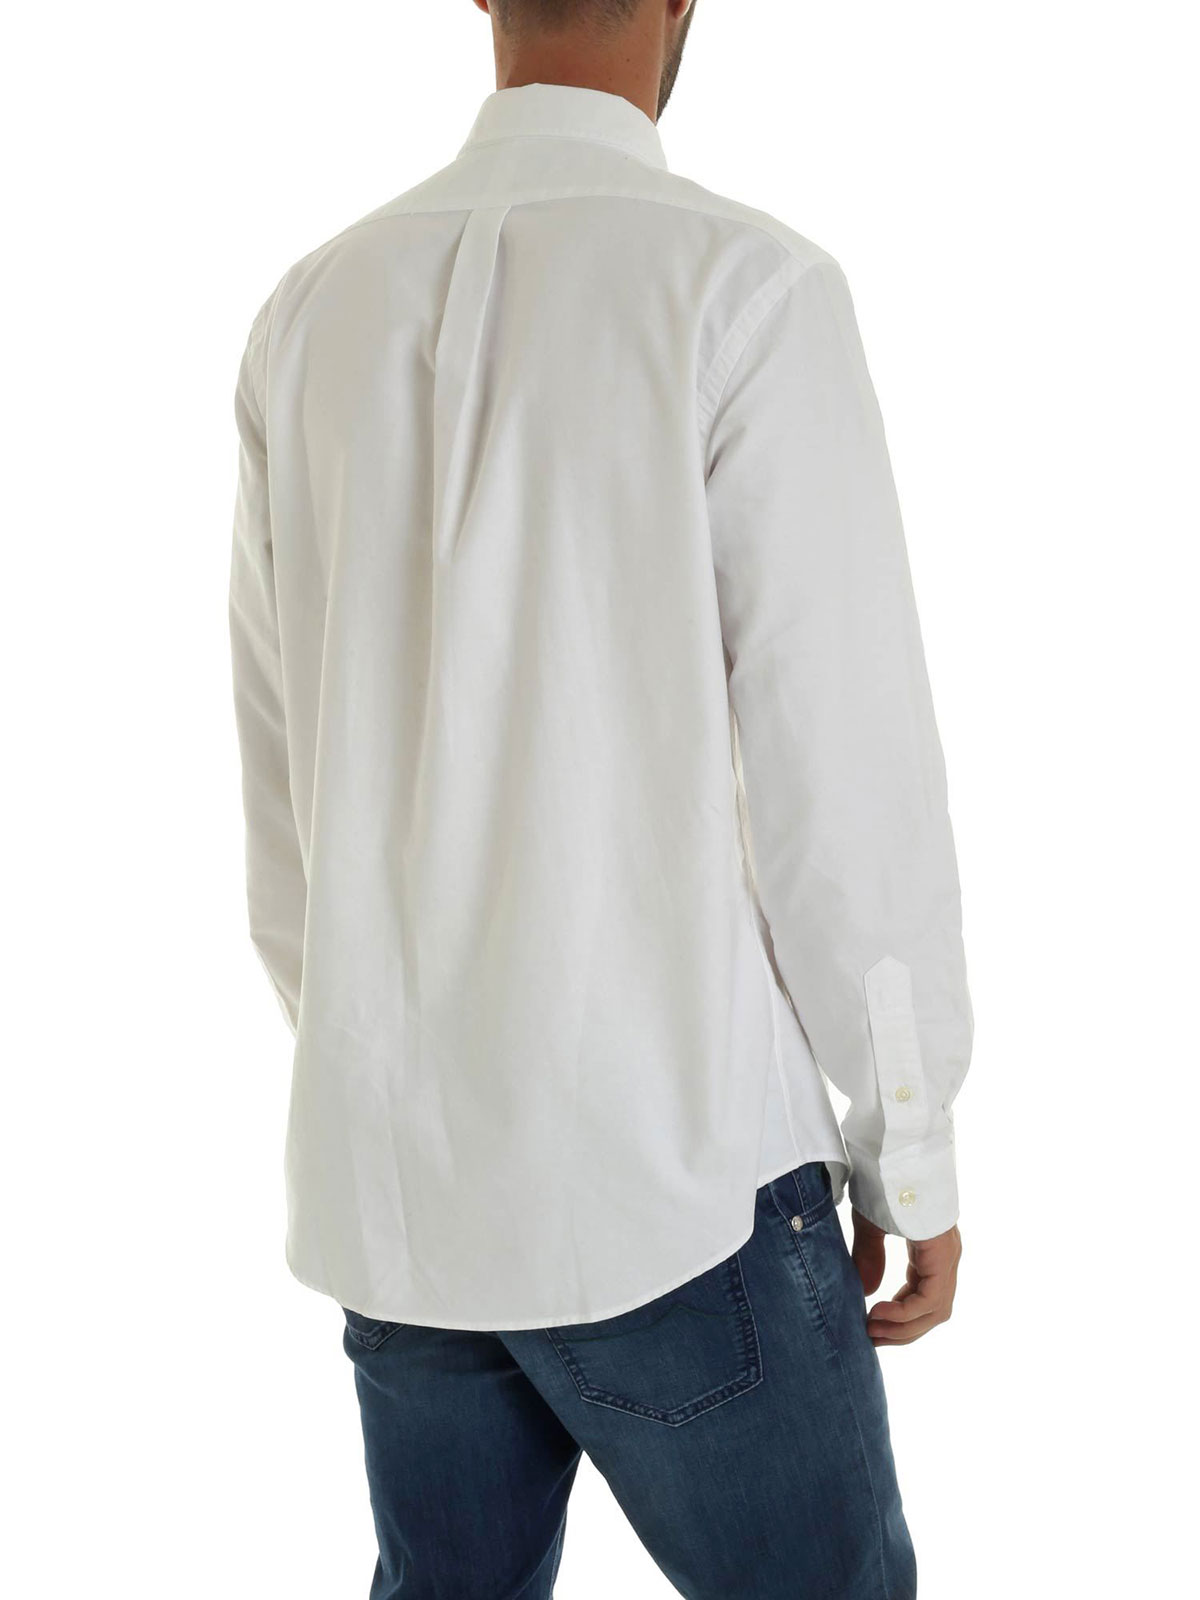 Picture of POLO RALPH LAUREN | Men's Cotton Sport Shirt